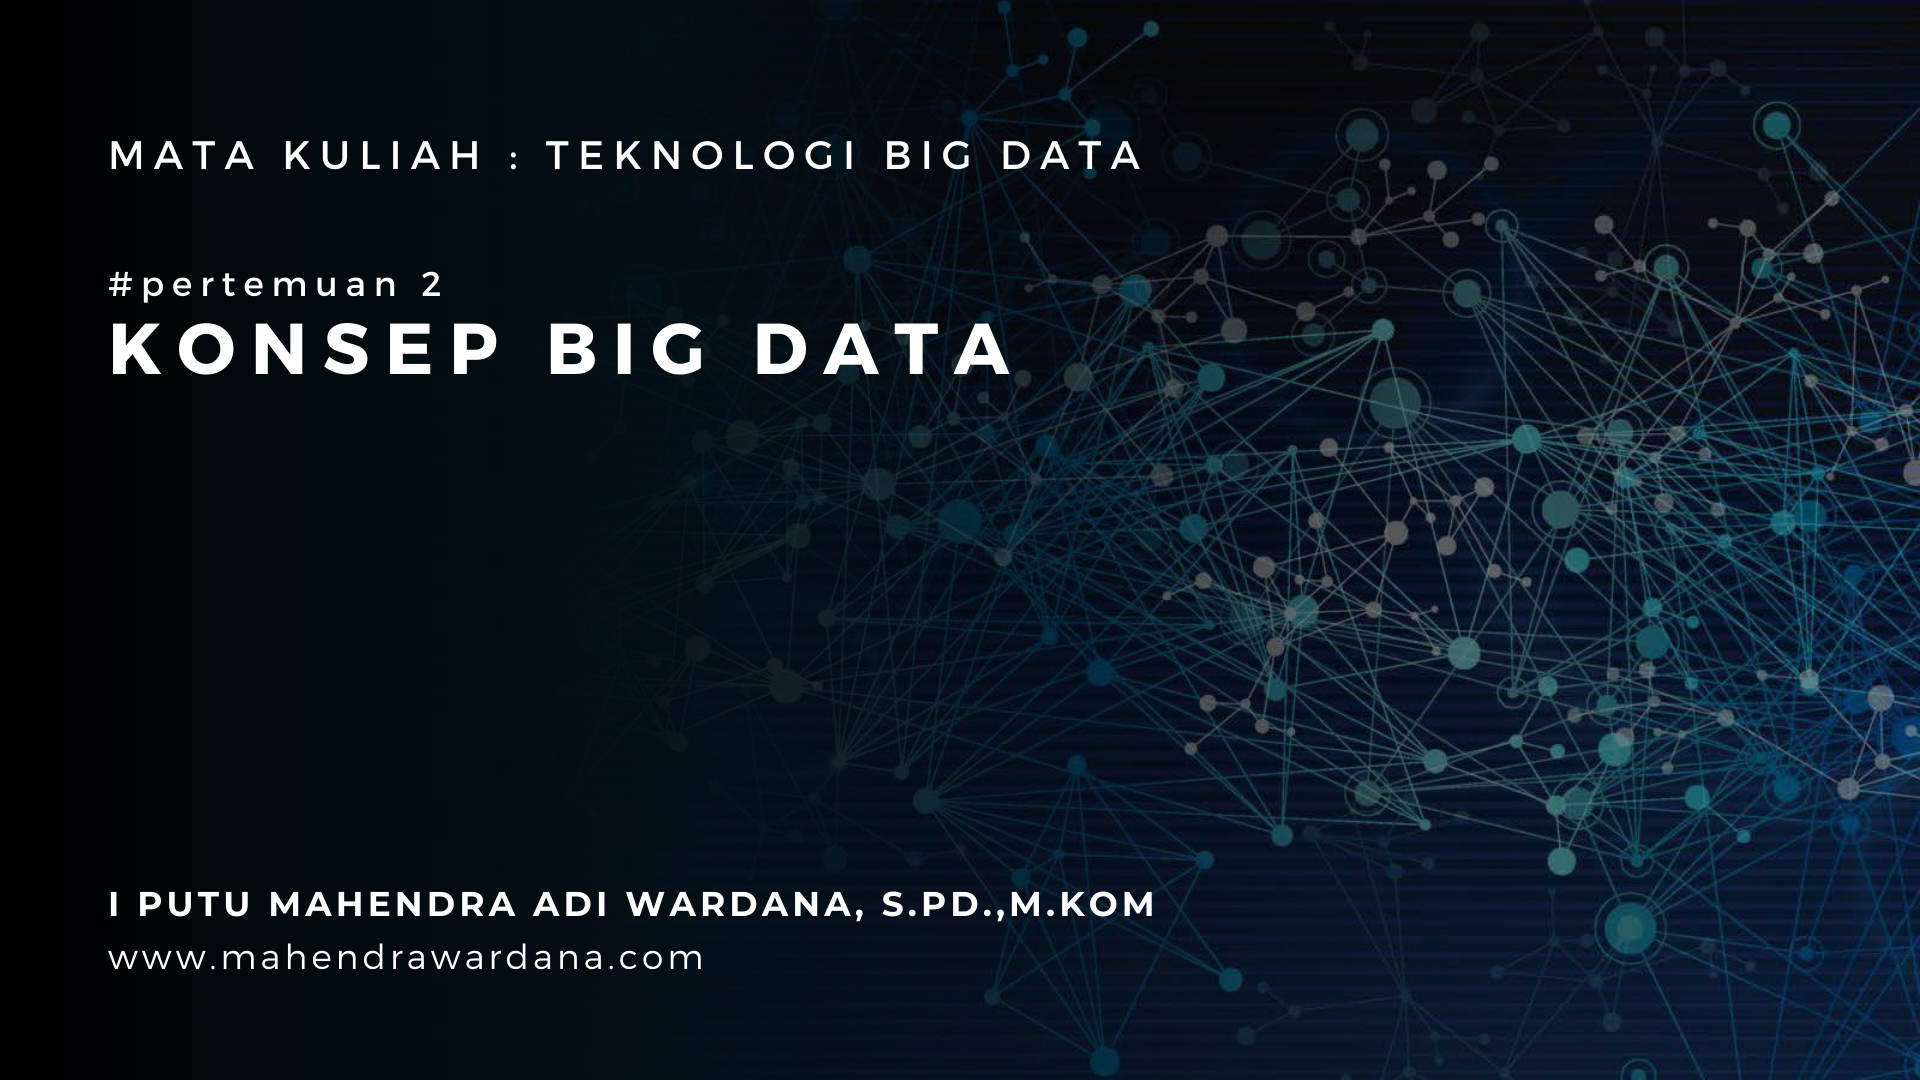 Pertemuan 2 - Konsep Big Data